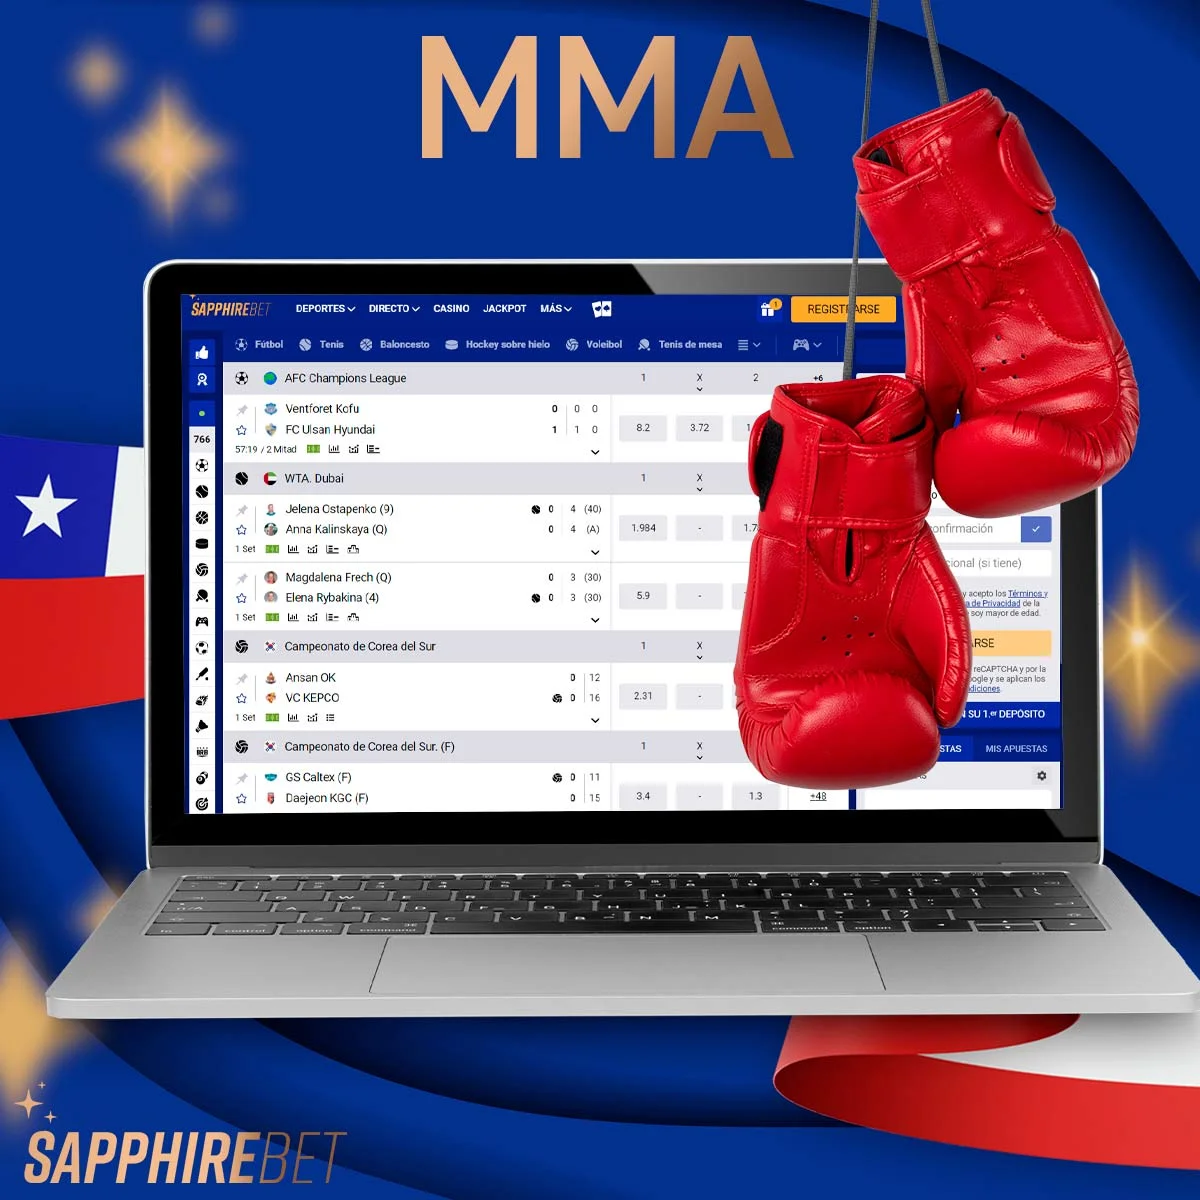 ¿Qué tipos de apuestas de MMA hay disponibles en Sapphirebet Chile?